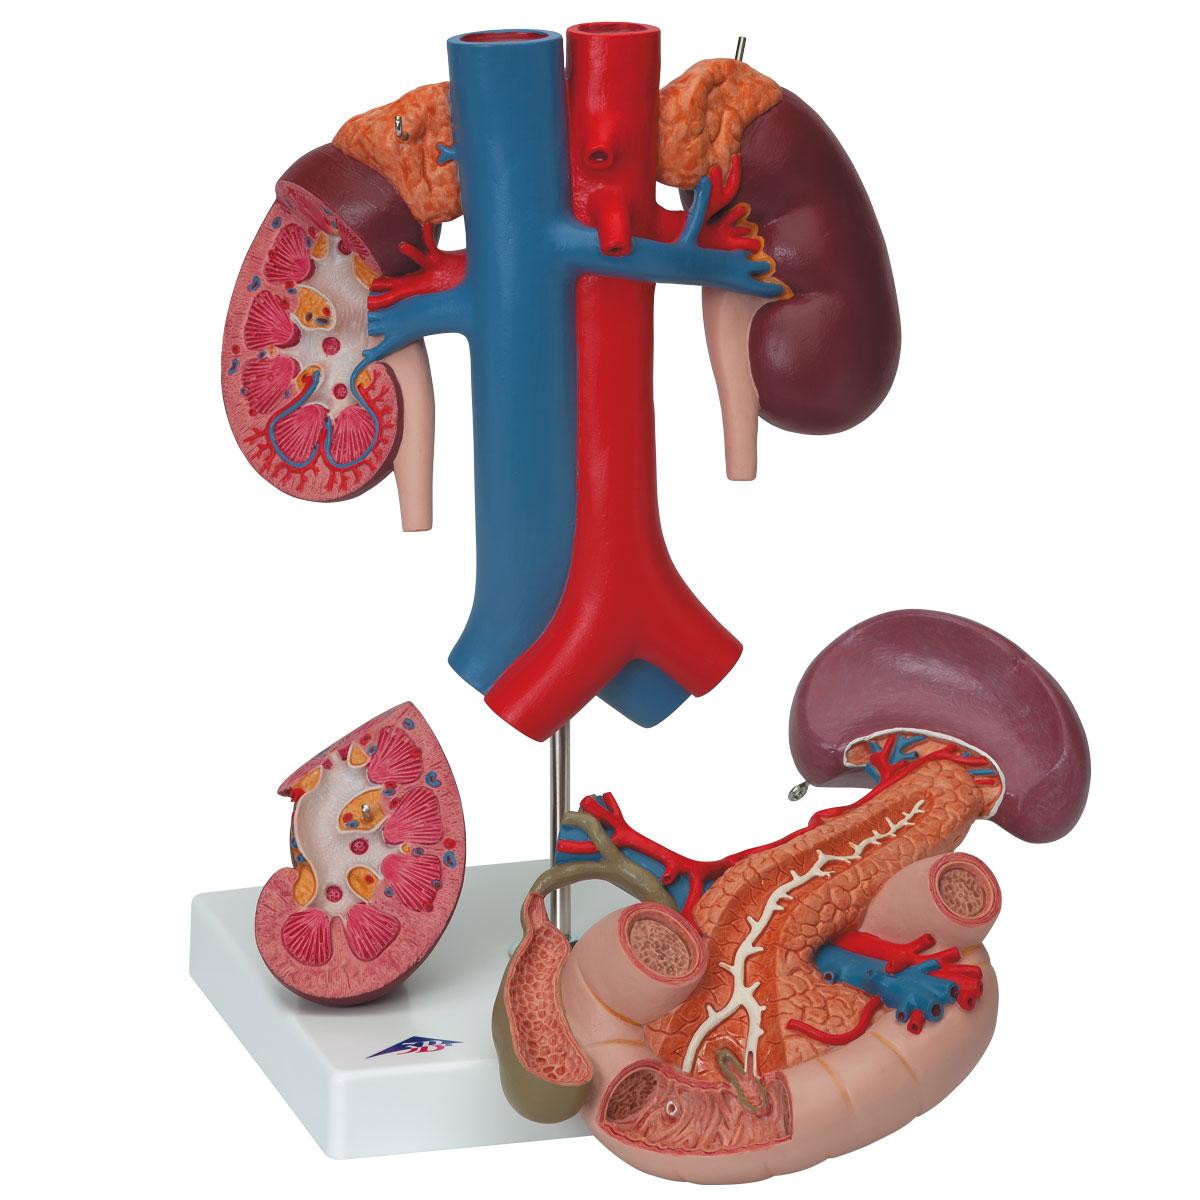 Trávící soustava - ostatní: Model ledviny se zadními orgány horní části ...